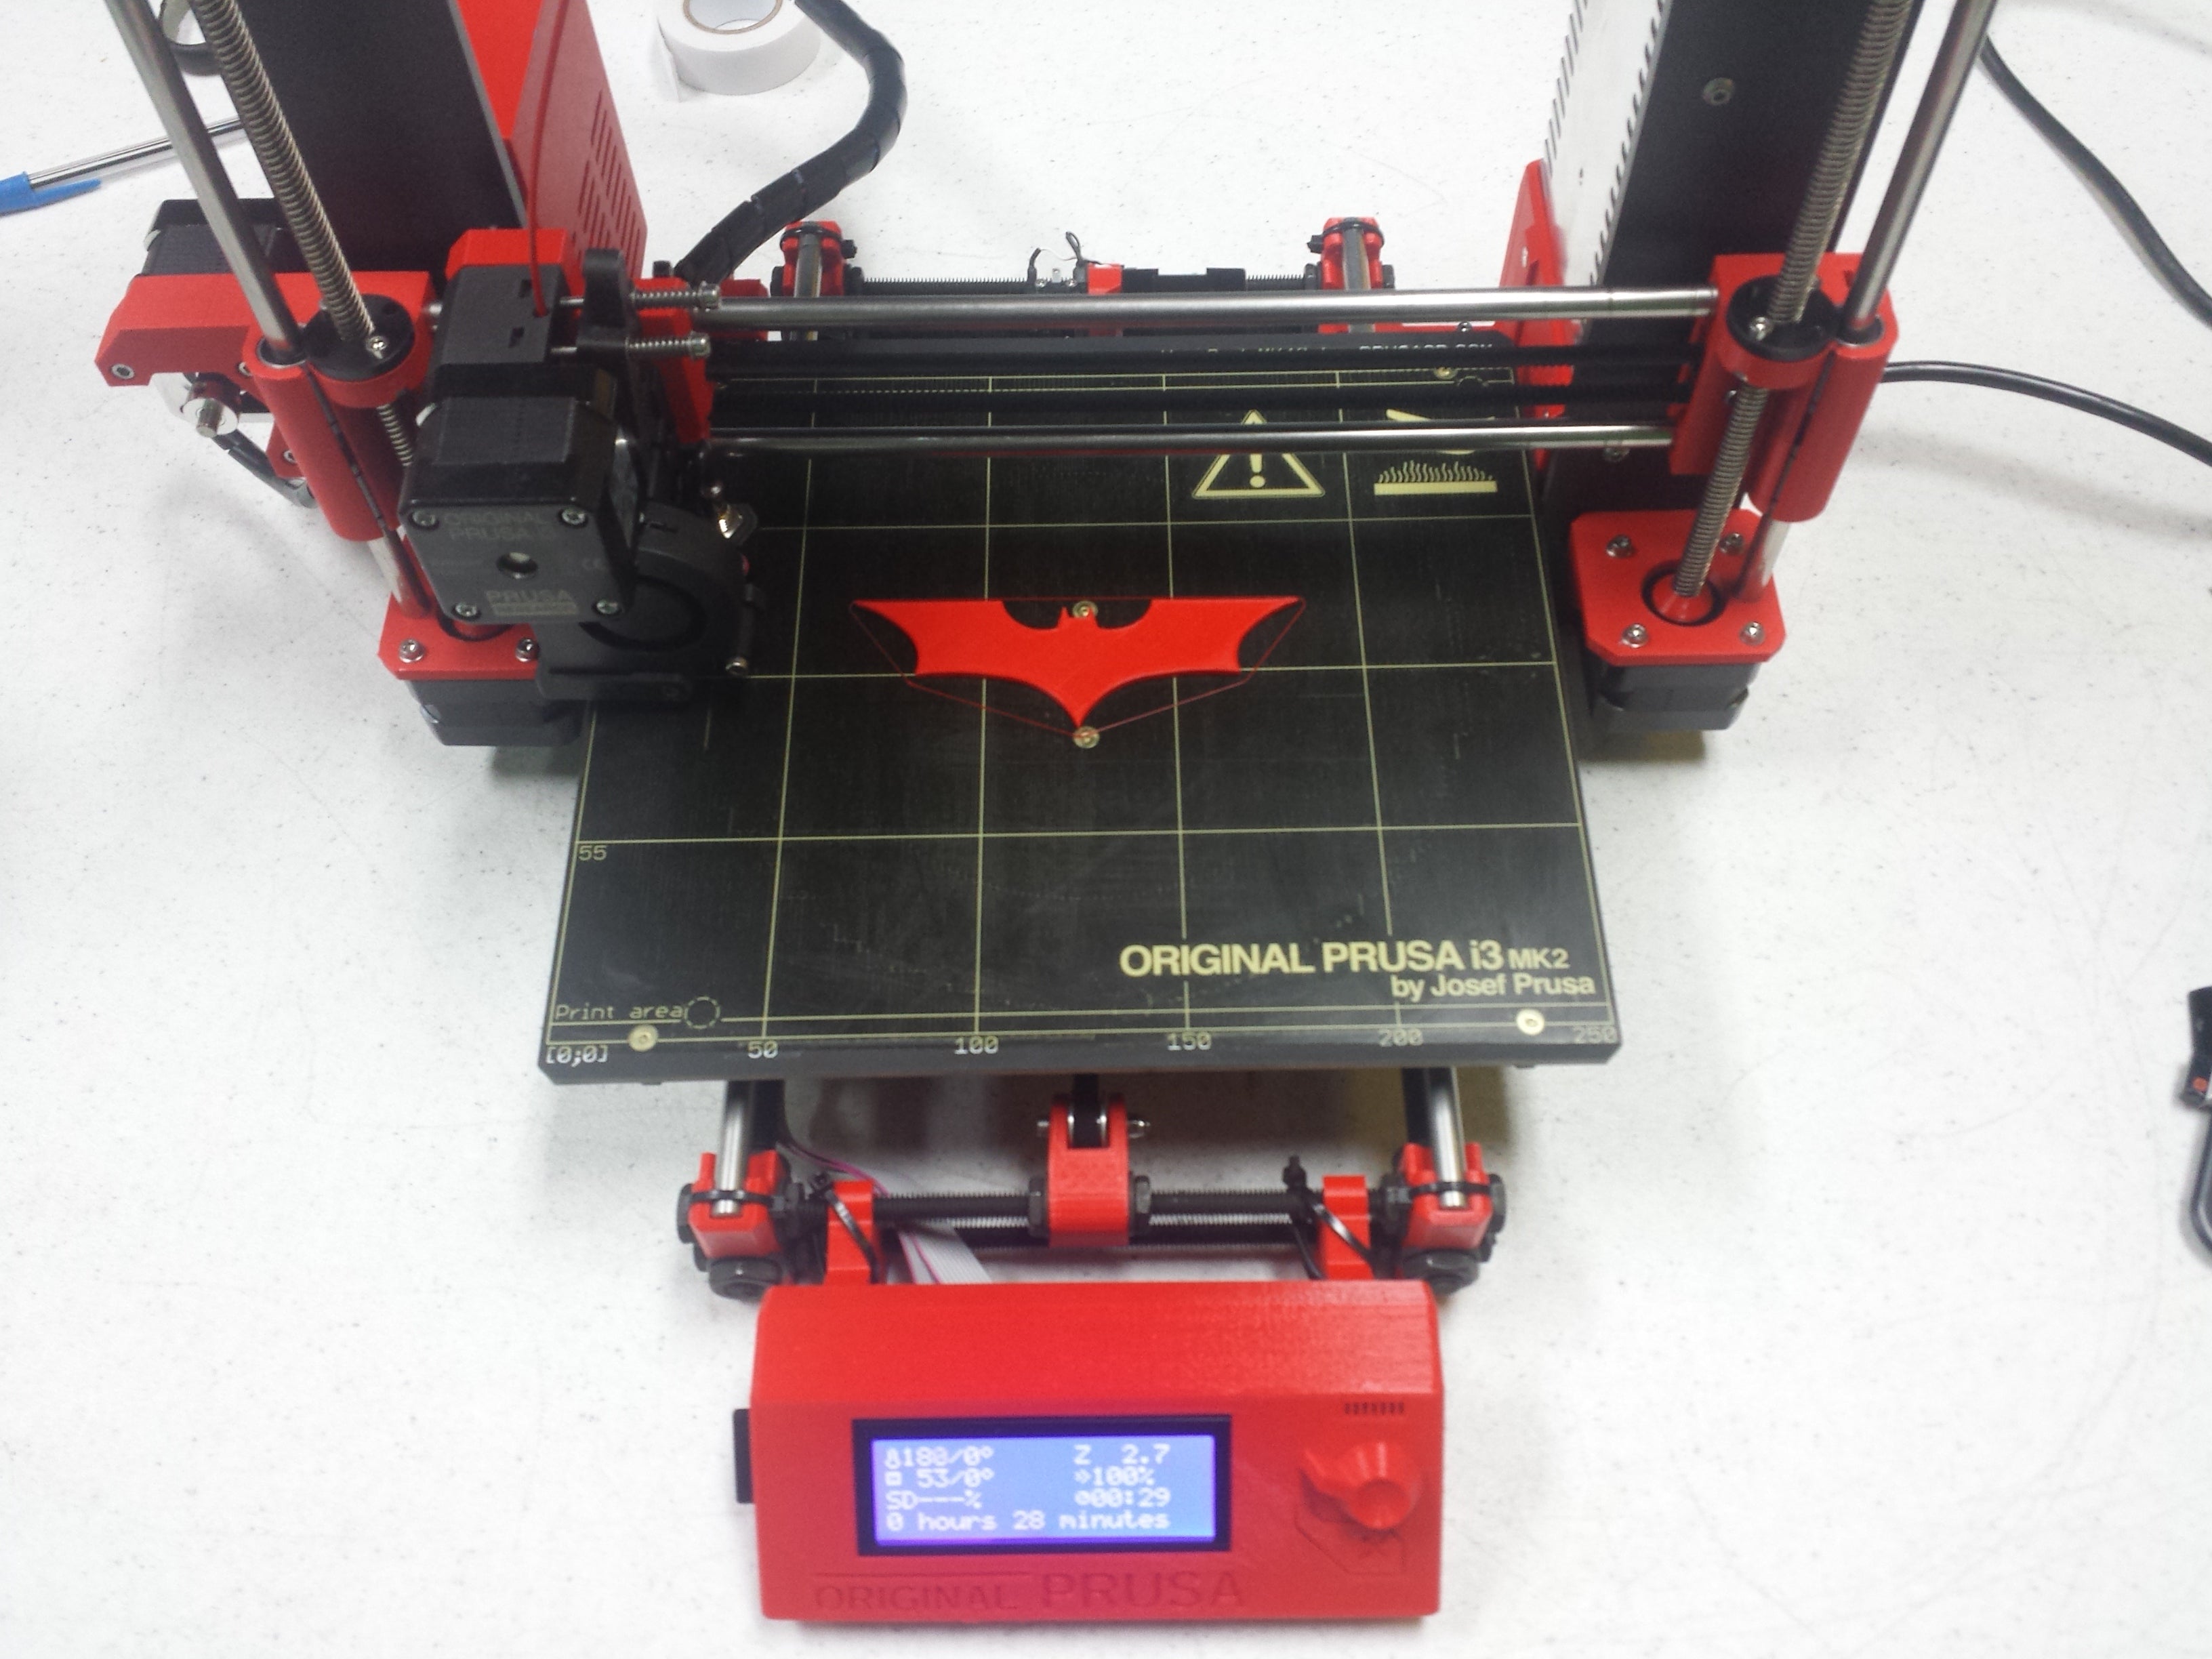 Picture of Original Prusa i3 MK2 red 3D printer printing Batman symbol